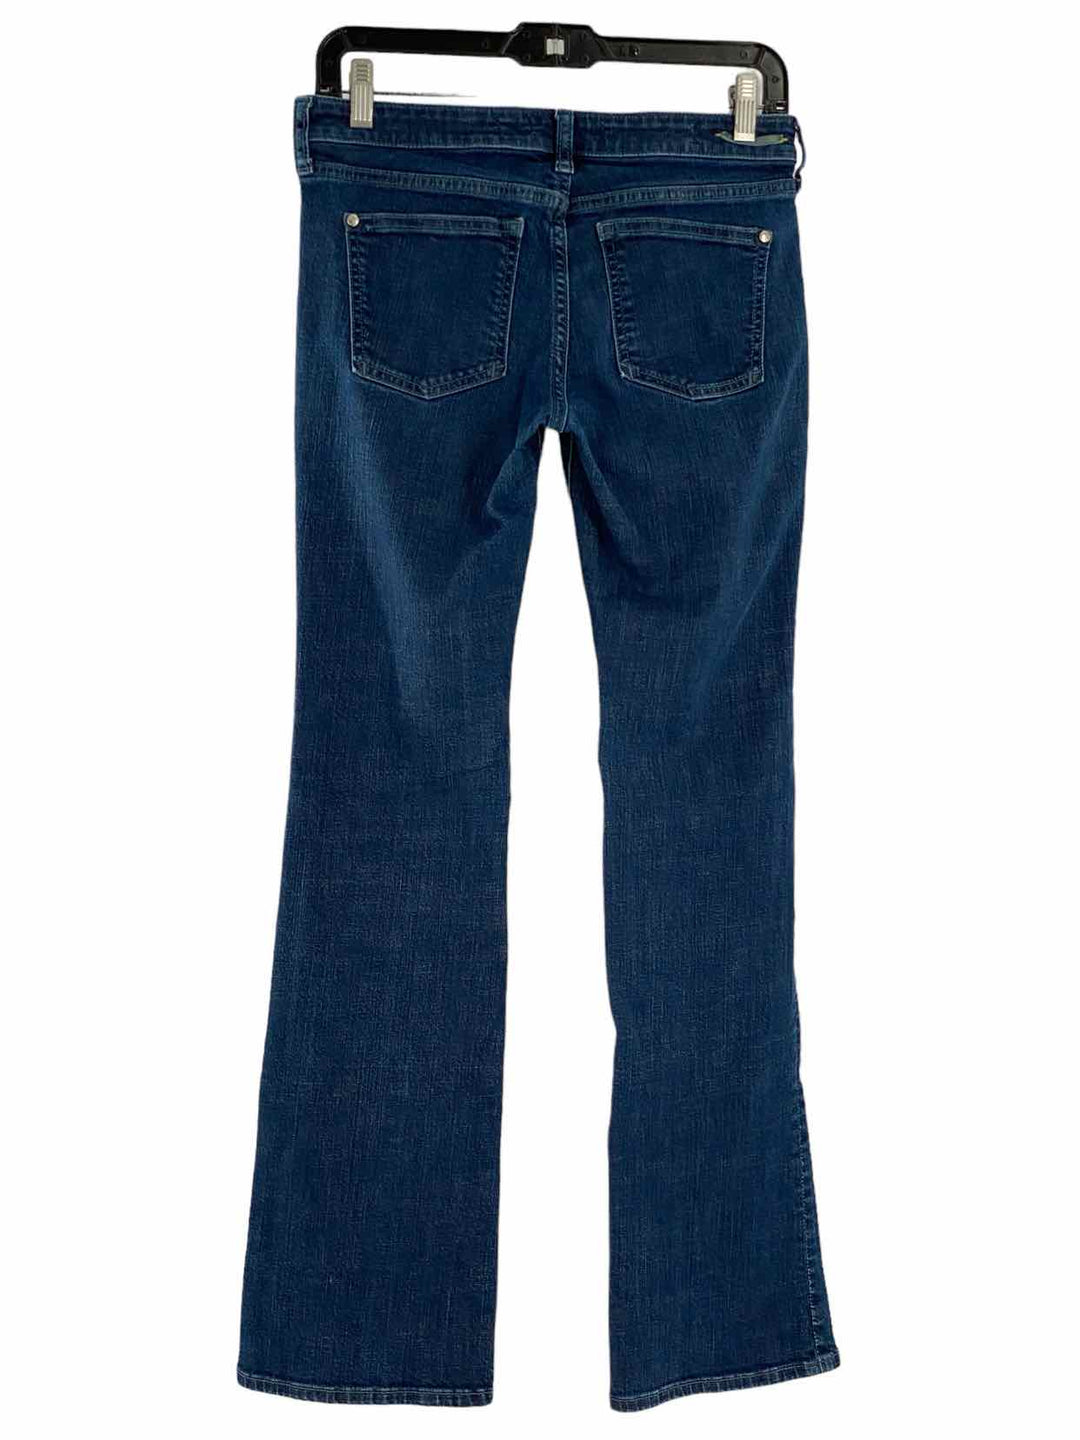 Pilcro Size 27 Blue Denim Jeans